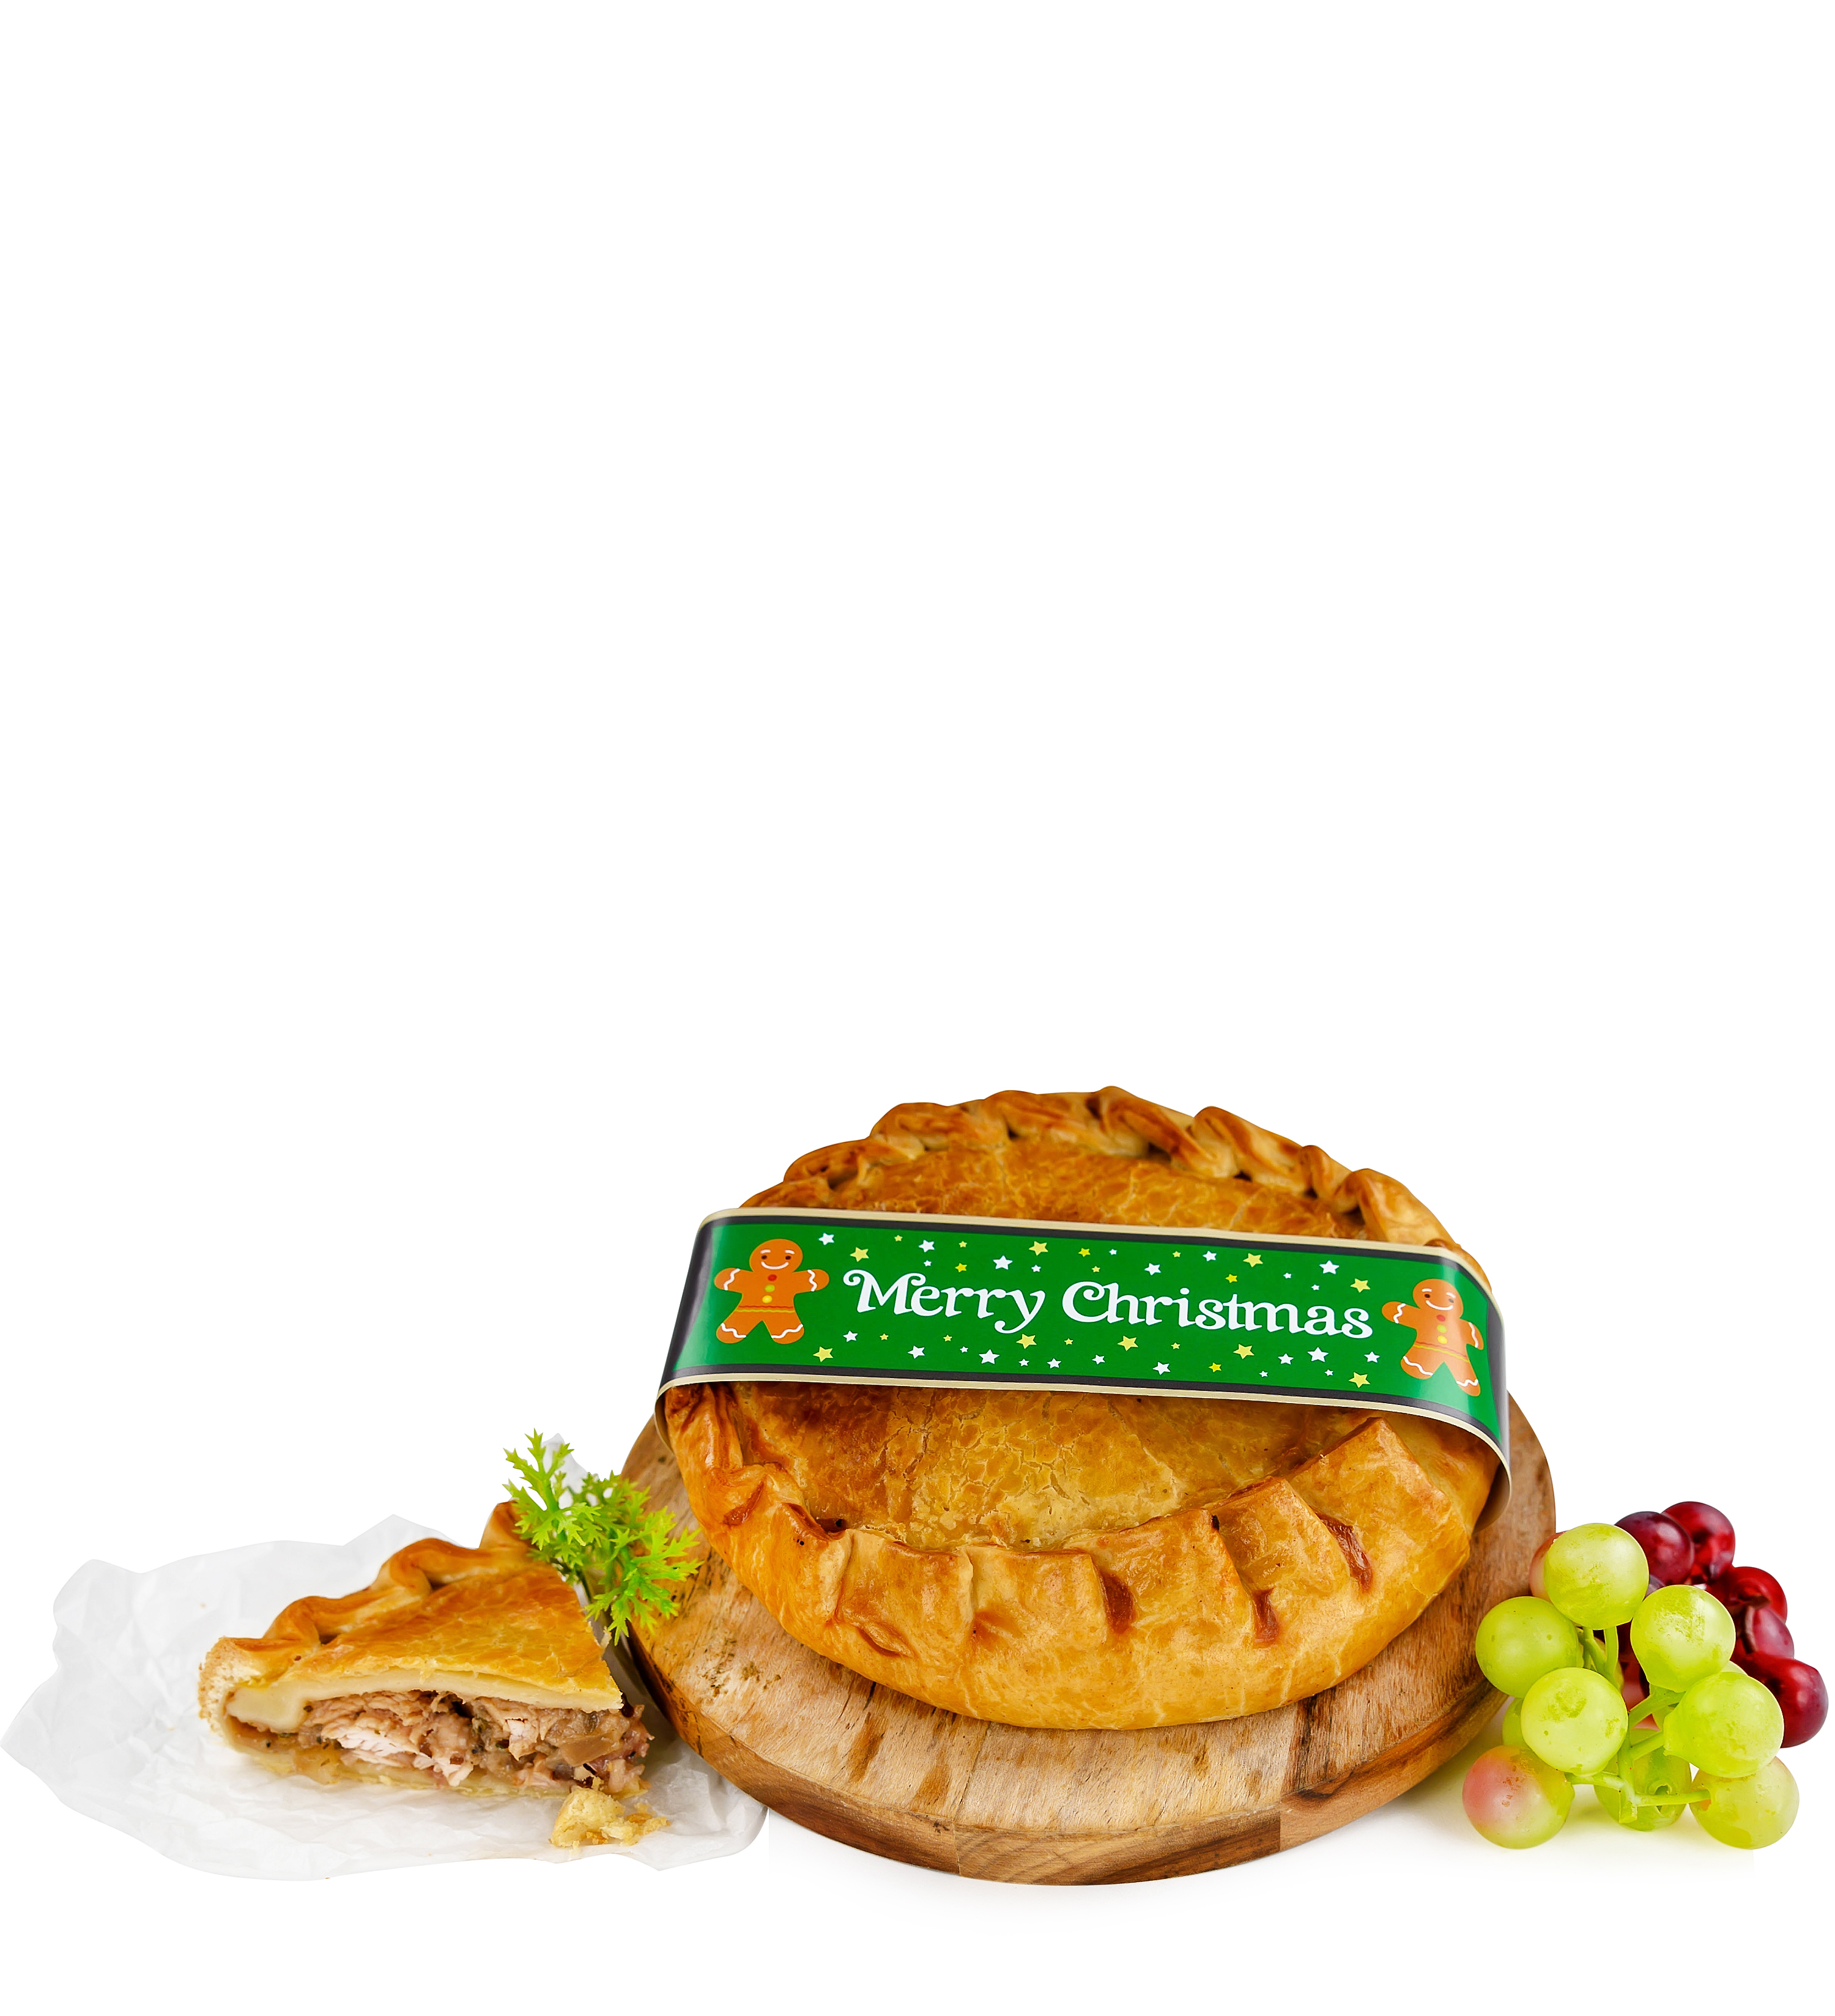 Christmas Family Pie - Christmas Pies - Pie Delivery - Pie Gifts - Pie Hampers - Pastry Gifts - Pastry Gift Delivery - Christmas Pie Delivery